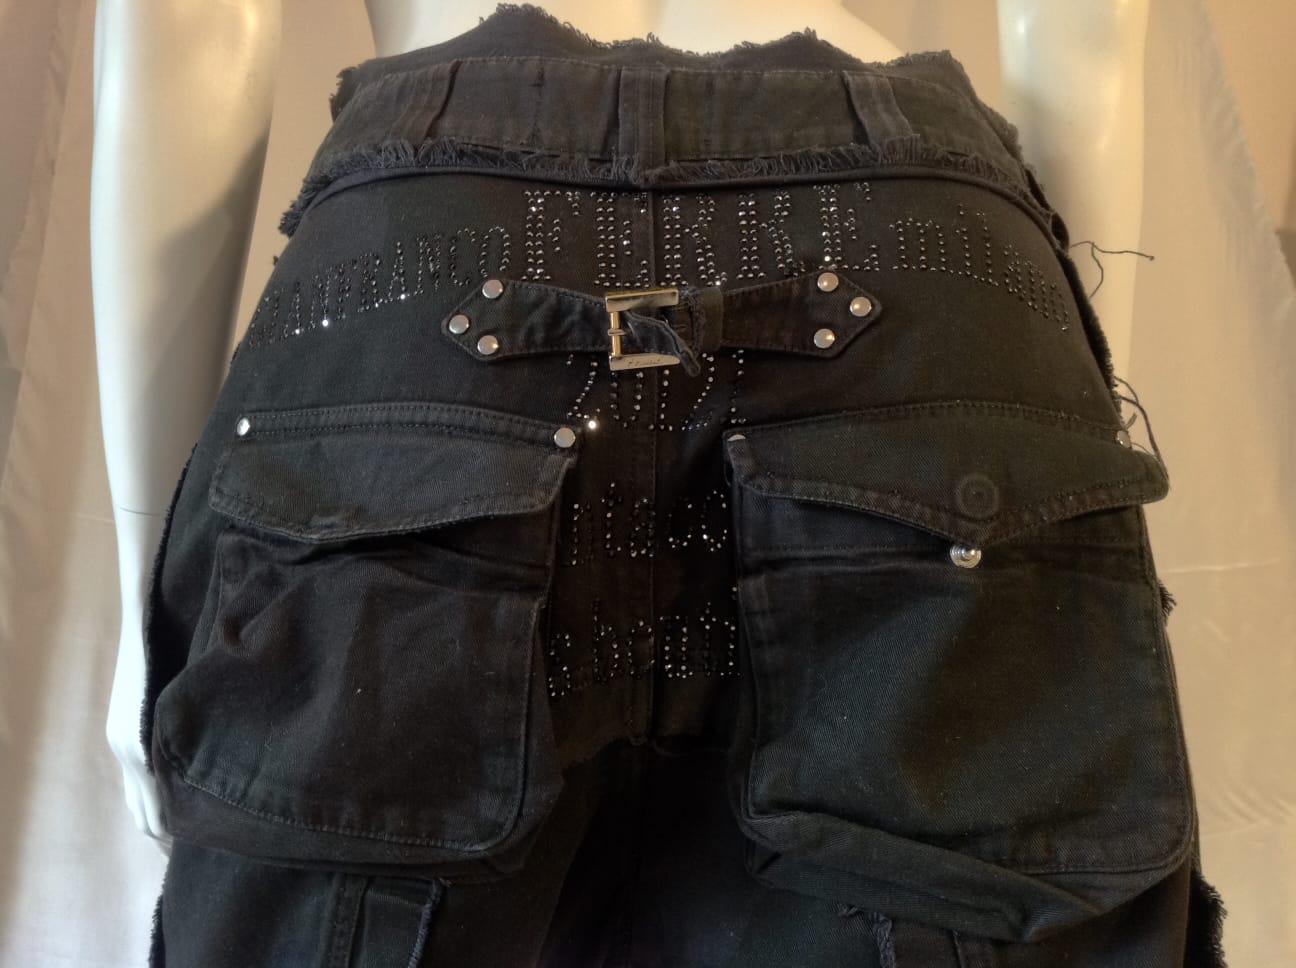 Gianfranco Ferré drop crotch black jeans, c 2010 For Sale 3